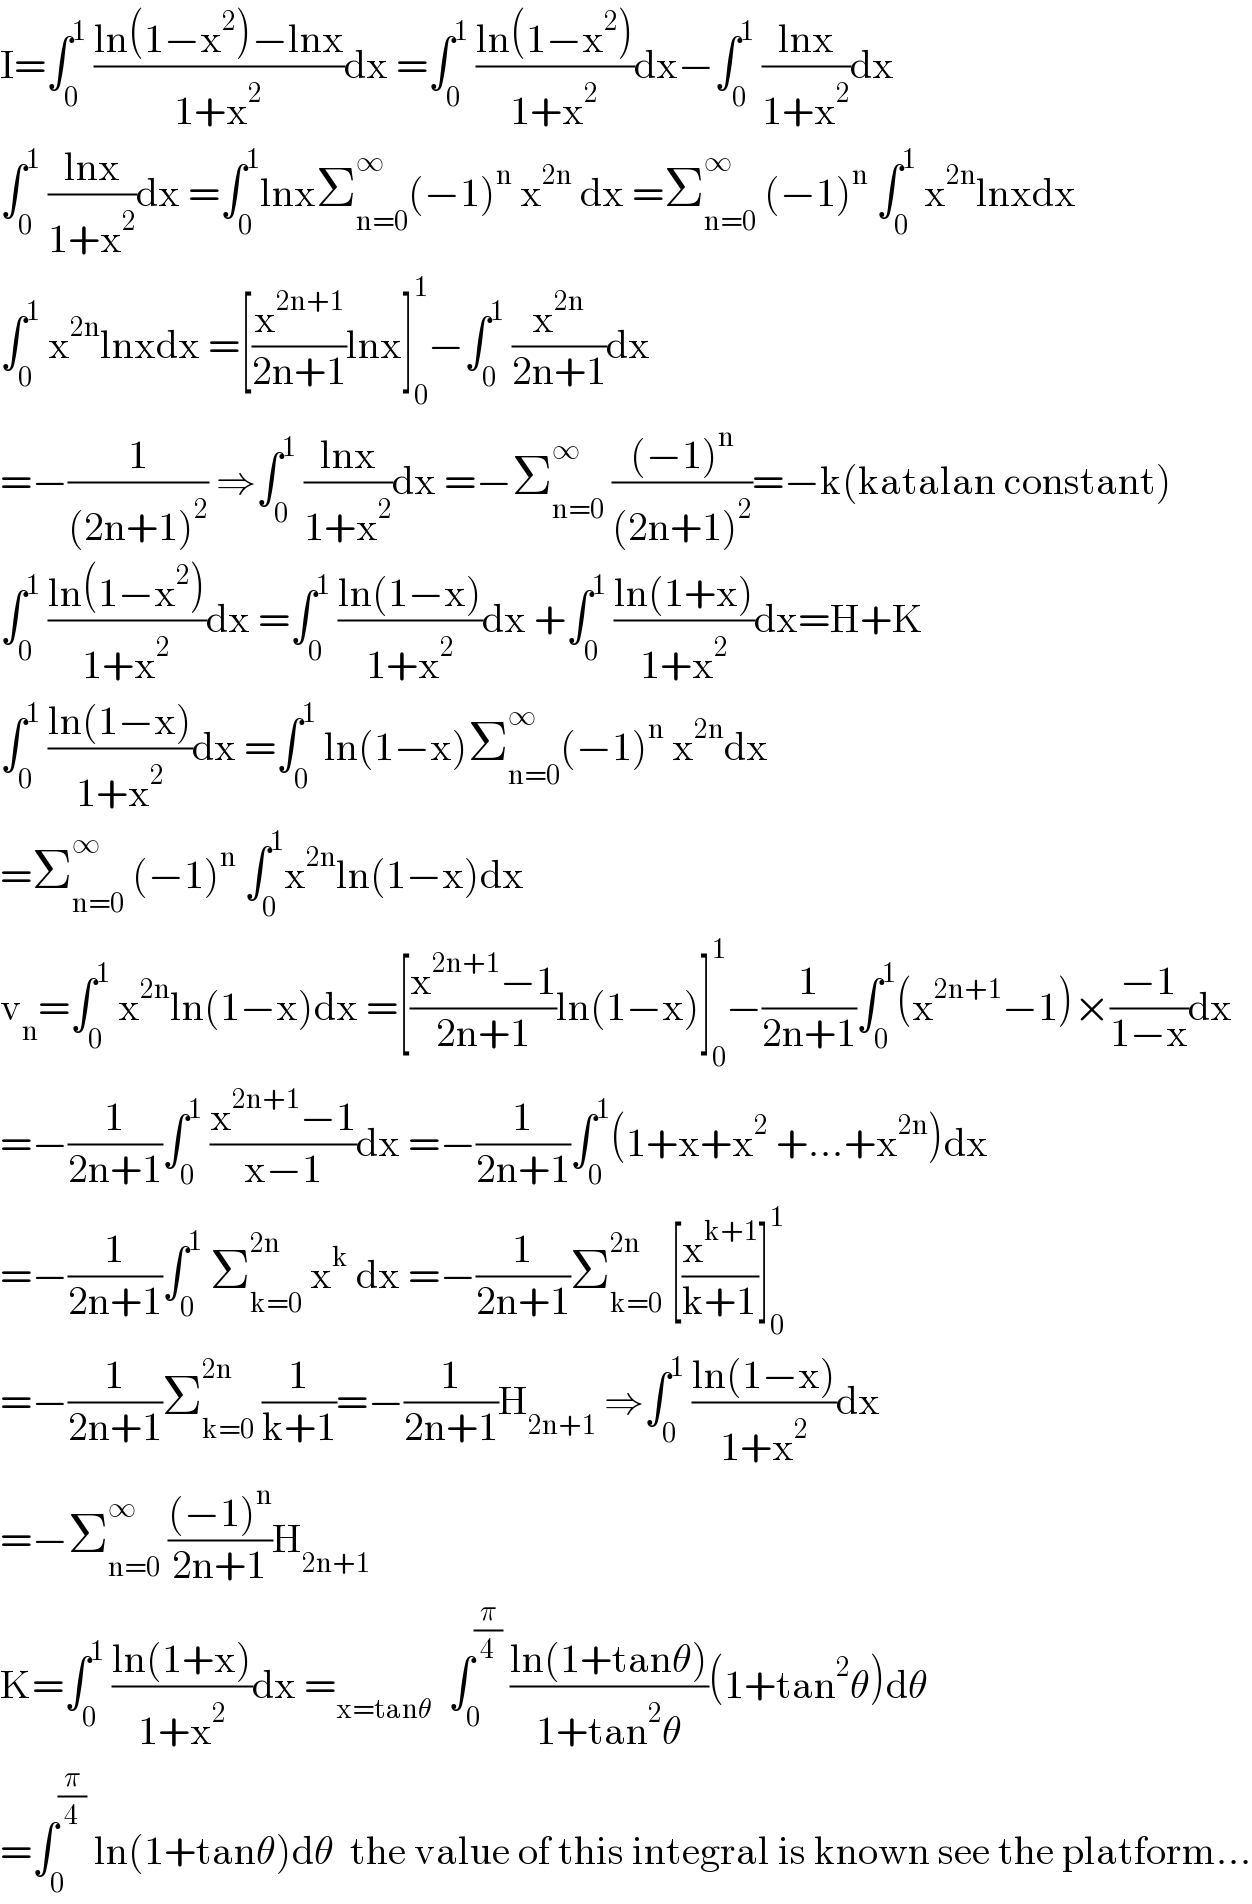 I=∫_0 ^1  ((ln(1−x^2 )−lnx)/(1+x^2 ))dx =∫_0 ^1  ((ln(1−x^2 ))/(1+x^2 ))dx−∫_0 ^1  ((lnx)/(1+x^2 ))dx  ∫_0 ^1  ((lnx)/(1+x^2 ))dx =∫_0 ^1 lnxΣ_(n=0) ^∞ (−1)^n  x^(2n)  dx =Σ_(n=0) ^∞  (−1)^n  ∫_0 ^1  x^(2n) lnxdx  ∫_0 ^1  x^(2n) lnxdx =[(x^(2n+1) /(2n+1))lnx]_0 ^1 −∫_0 ^1  (x^(2n) /(2n+1))dx  =−(1/((2n+1)^2 )) ⇒∫_0 ^1  ((lnx)/(1+x^2 ))dx =−Σ_(n=0) ^∞  (((−1)^n )/((2n+1)^2 ))=−k(katalan constant)  ∫_0 ^1  ((ln(1−x^2 ))/(1+x^2 ))dx =∫_0 ^1  ((ln(1−x))/(1+x^2 ))dx +∫_0 ^1  ((ln(1+x))/(1+x^2 ))dx=H+K  ∫_0 ^1  ((ln(1−x))/(1+x^2 ))dx =∫_0 ^1  ln(1−x)Σ_(n=0) ^∞ (−1)^n  x^(2n) dx  =Σ_(n=0) ^∞  (−1)^n  ∫_0 ^1 x^(2n) ln(1−x)dx  v_n =∫_0 ^1  x^(2n) ln(1−x)dx =[((x^(2n+1) −1)/(2n+1))ln(1−x)]_0 ^1 −(1/(2n+1))∫_0 ^1 (x^(2n+1) −1)×((−1)/(1−x))dx  =−(1/(2n+1))∫_0 ^1  ((x^(2n+1) −1)/(x−1))dx =−(1/(2n+1))∫_0 ^1 (1+x+x^2  +...+x^(2n) )dx  =−(1/(2n+1))∫_0 ^1  Σ_(k=0) ^(2n)  x^k  dx =−(1/(2n+1))Σ_(k=0) ^(2n)  [(x^(k+1) /(k+1))]_0 ^1   =−(1/(2n+1))Σ_(k=0) ^(2n)  (1/(k+1))=−(1/(2n+1))H_(2n+1)  ⇒∫_0 ^1  ((ln(1−x))/(1+x^2 ))dx  =−Σ_(n=0) ^∞  (((−1)^n )/(2n+1))H_(2n+1)   K=∫_0 ^1  ((ln(1+x))/(1+x^2 ))dx =_(x=tanθ)   ∫_0 ^(π/4)  ((ln(1+tanθ))/(1+tan^2 θ))(1+tan^2 θ)dθ  =∫_0 ^(π/4)  ln(1+tanθ)dθ  the value of this integral is known see the platform...  